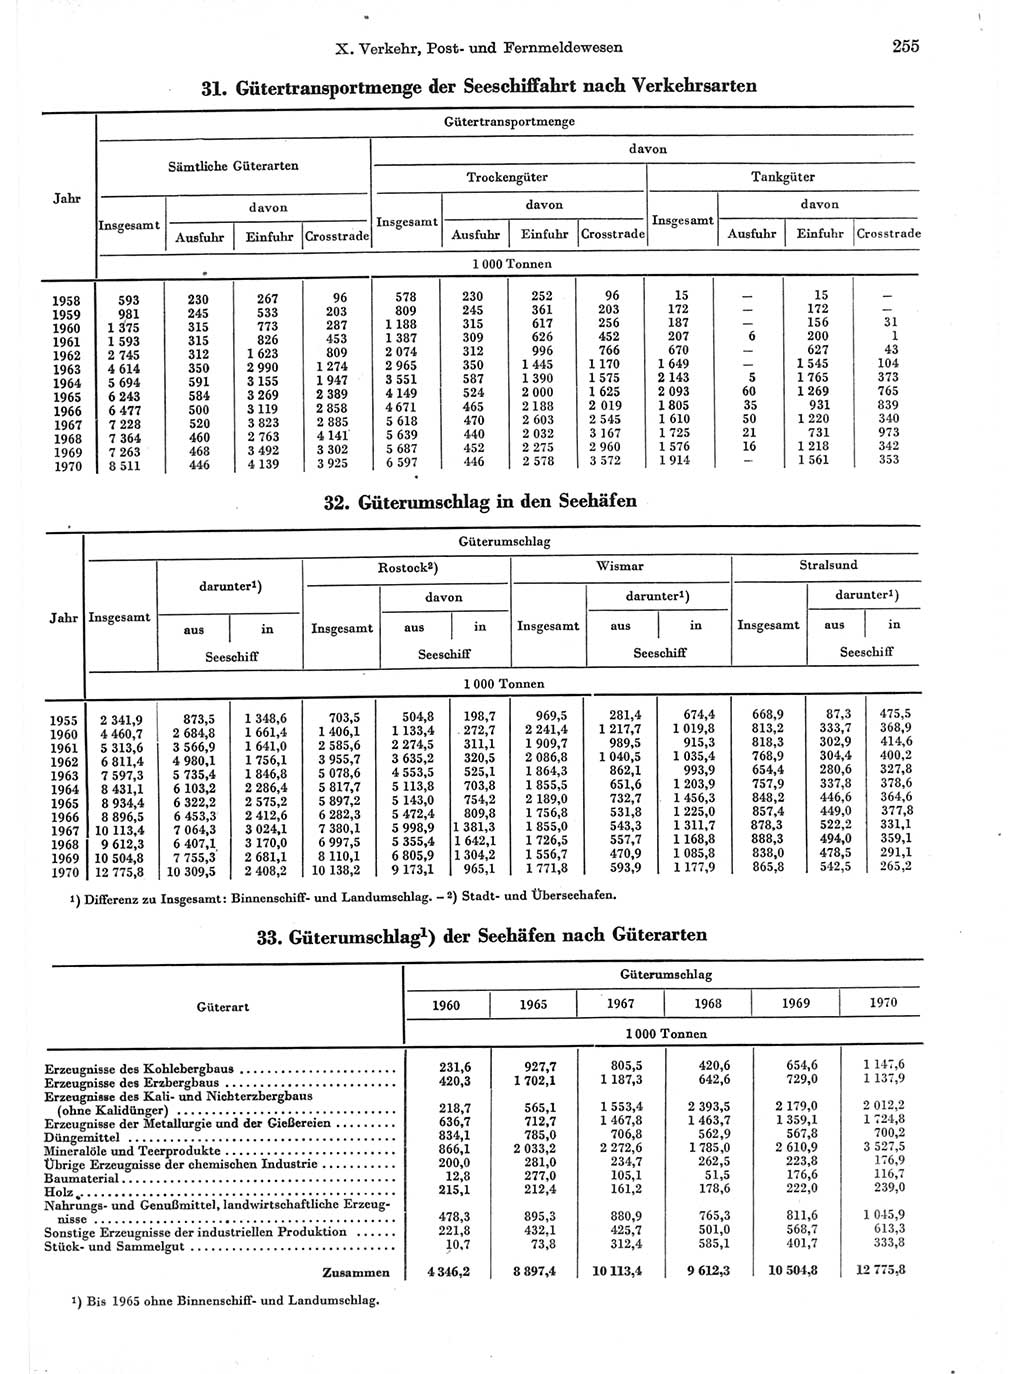 Statistisches Jahrbuch der Deutschen Demokratischen Republik (DDR) 1971, Seite 255 (Stat. Jb. DDR 1971, S. 255)